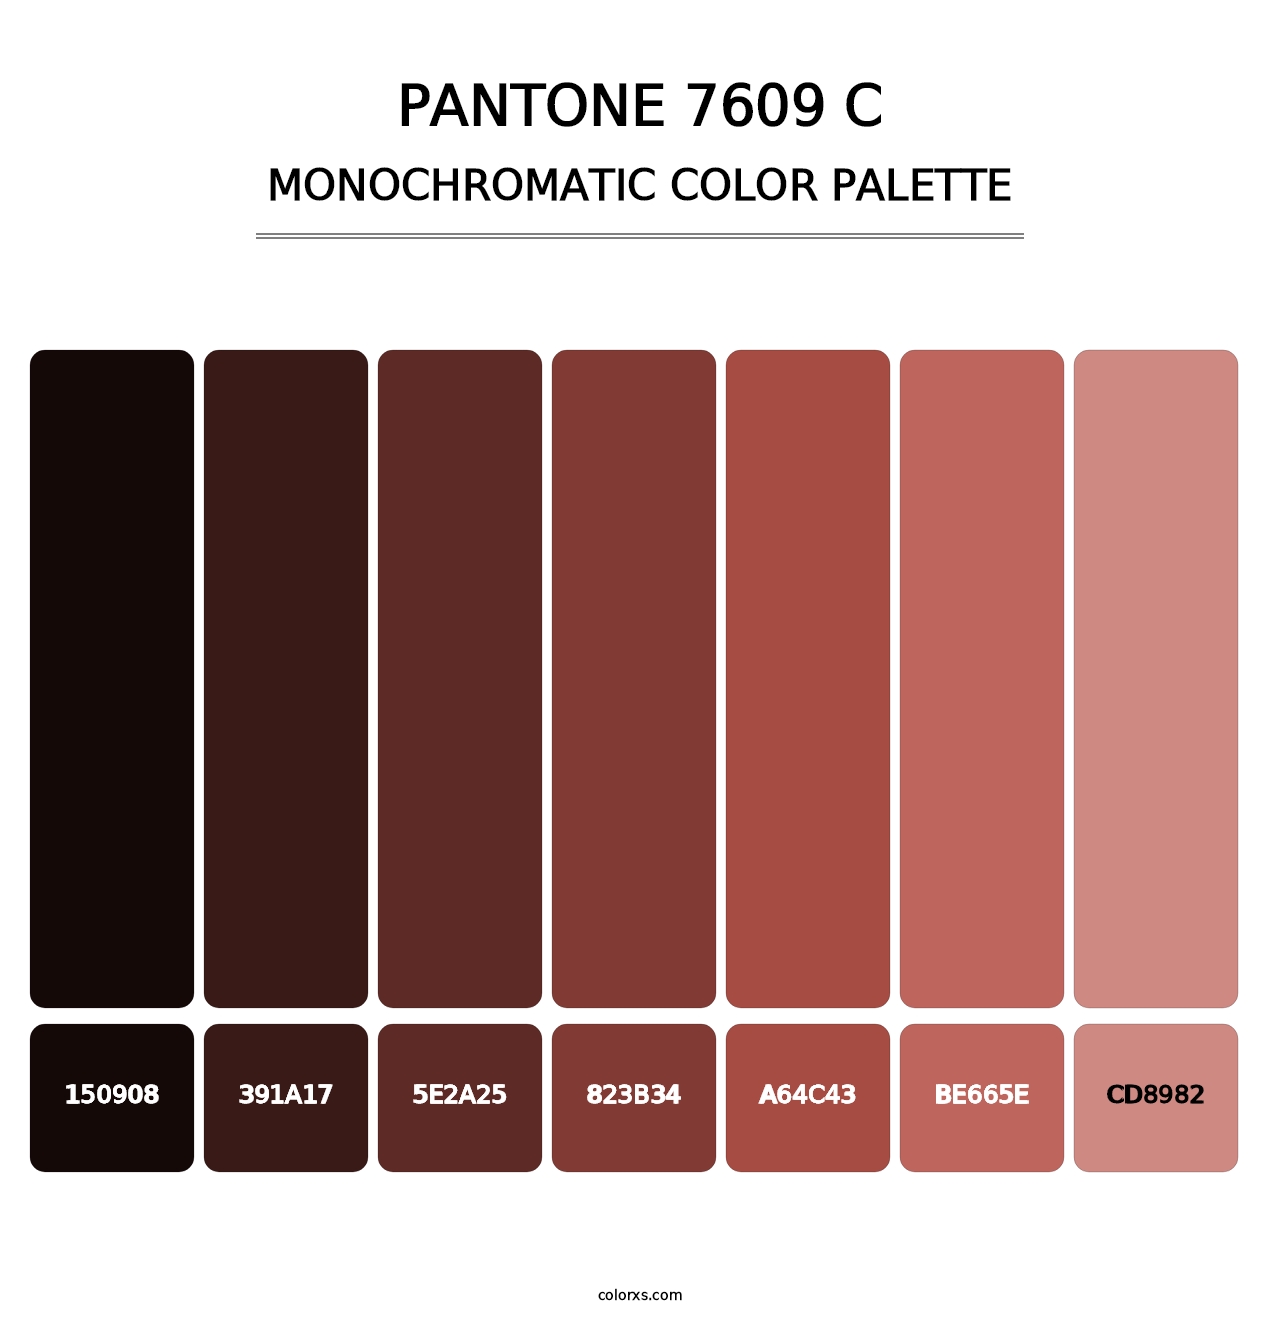 PANTONE 7609 C - Monochromatic Color Palette